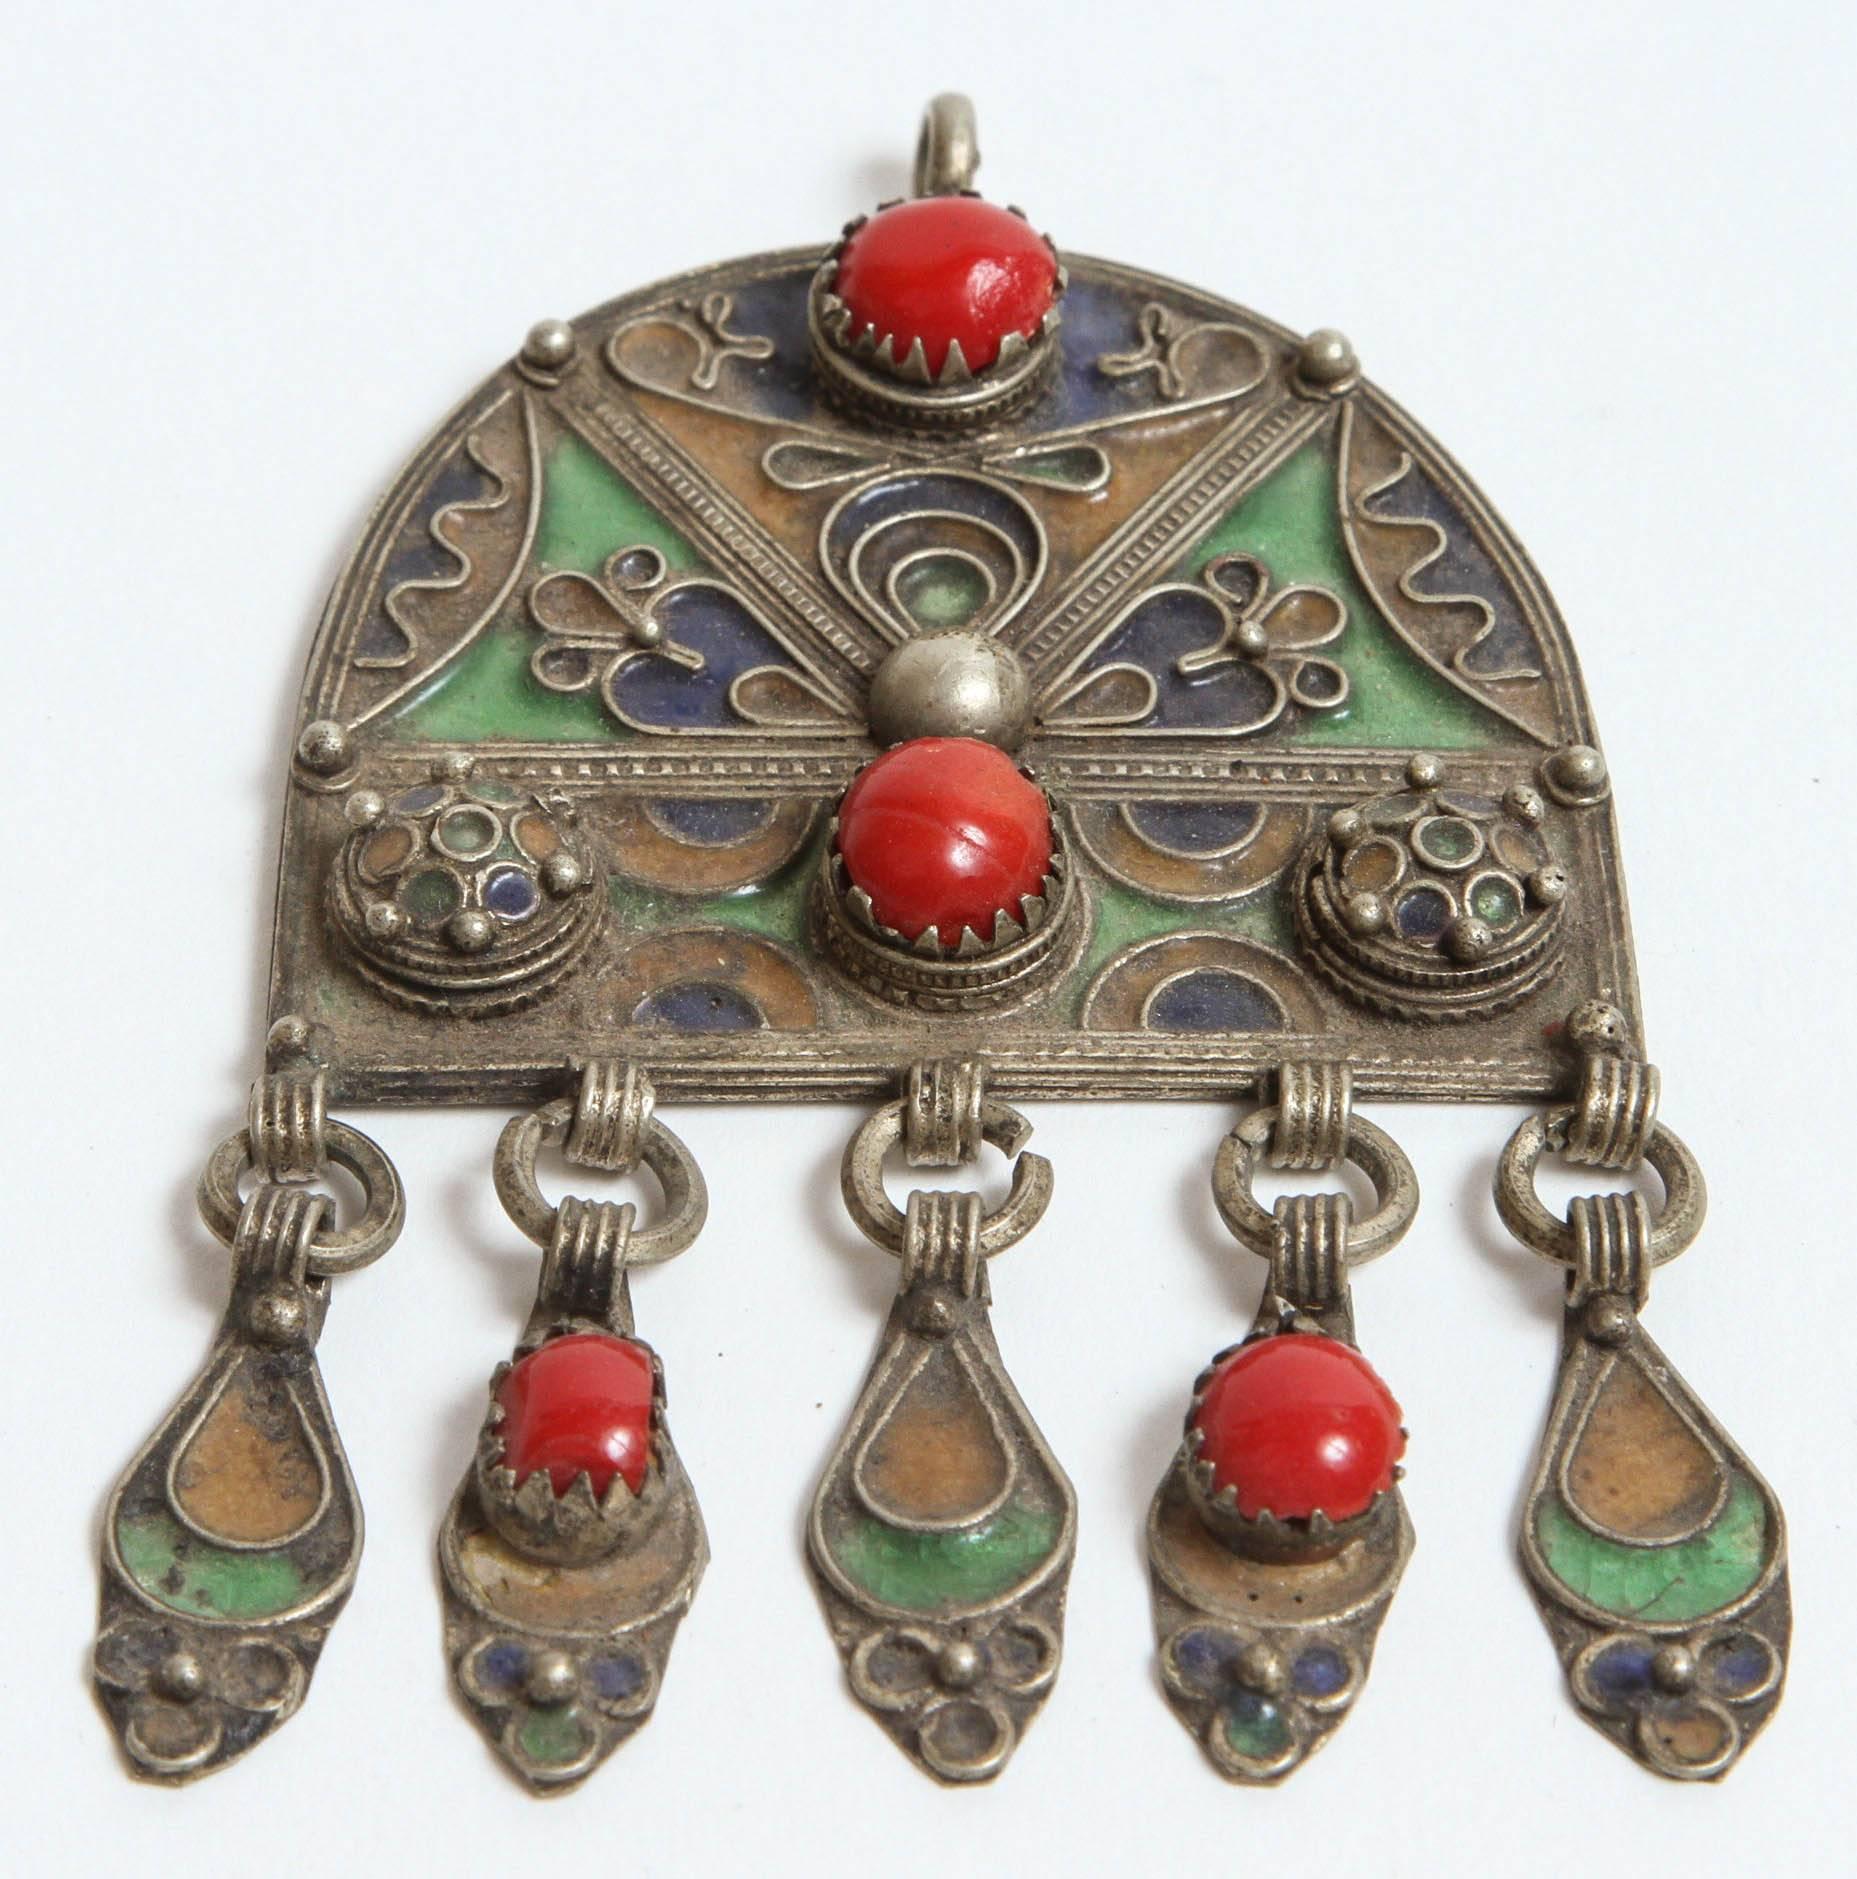 Schöner marokkanischer ethnischer Fibel-Anhänger oder Brosche im Vintage-Stil.
Dieser ethnische marokkanische Silberanhänger ist mit gelb, grün und blau emailliert und mit einem Cabochon aus roten Glasperlen versehen.
In Marokko von den Berberfrauen